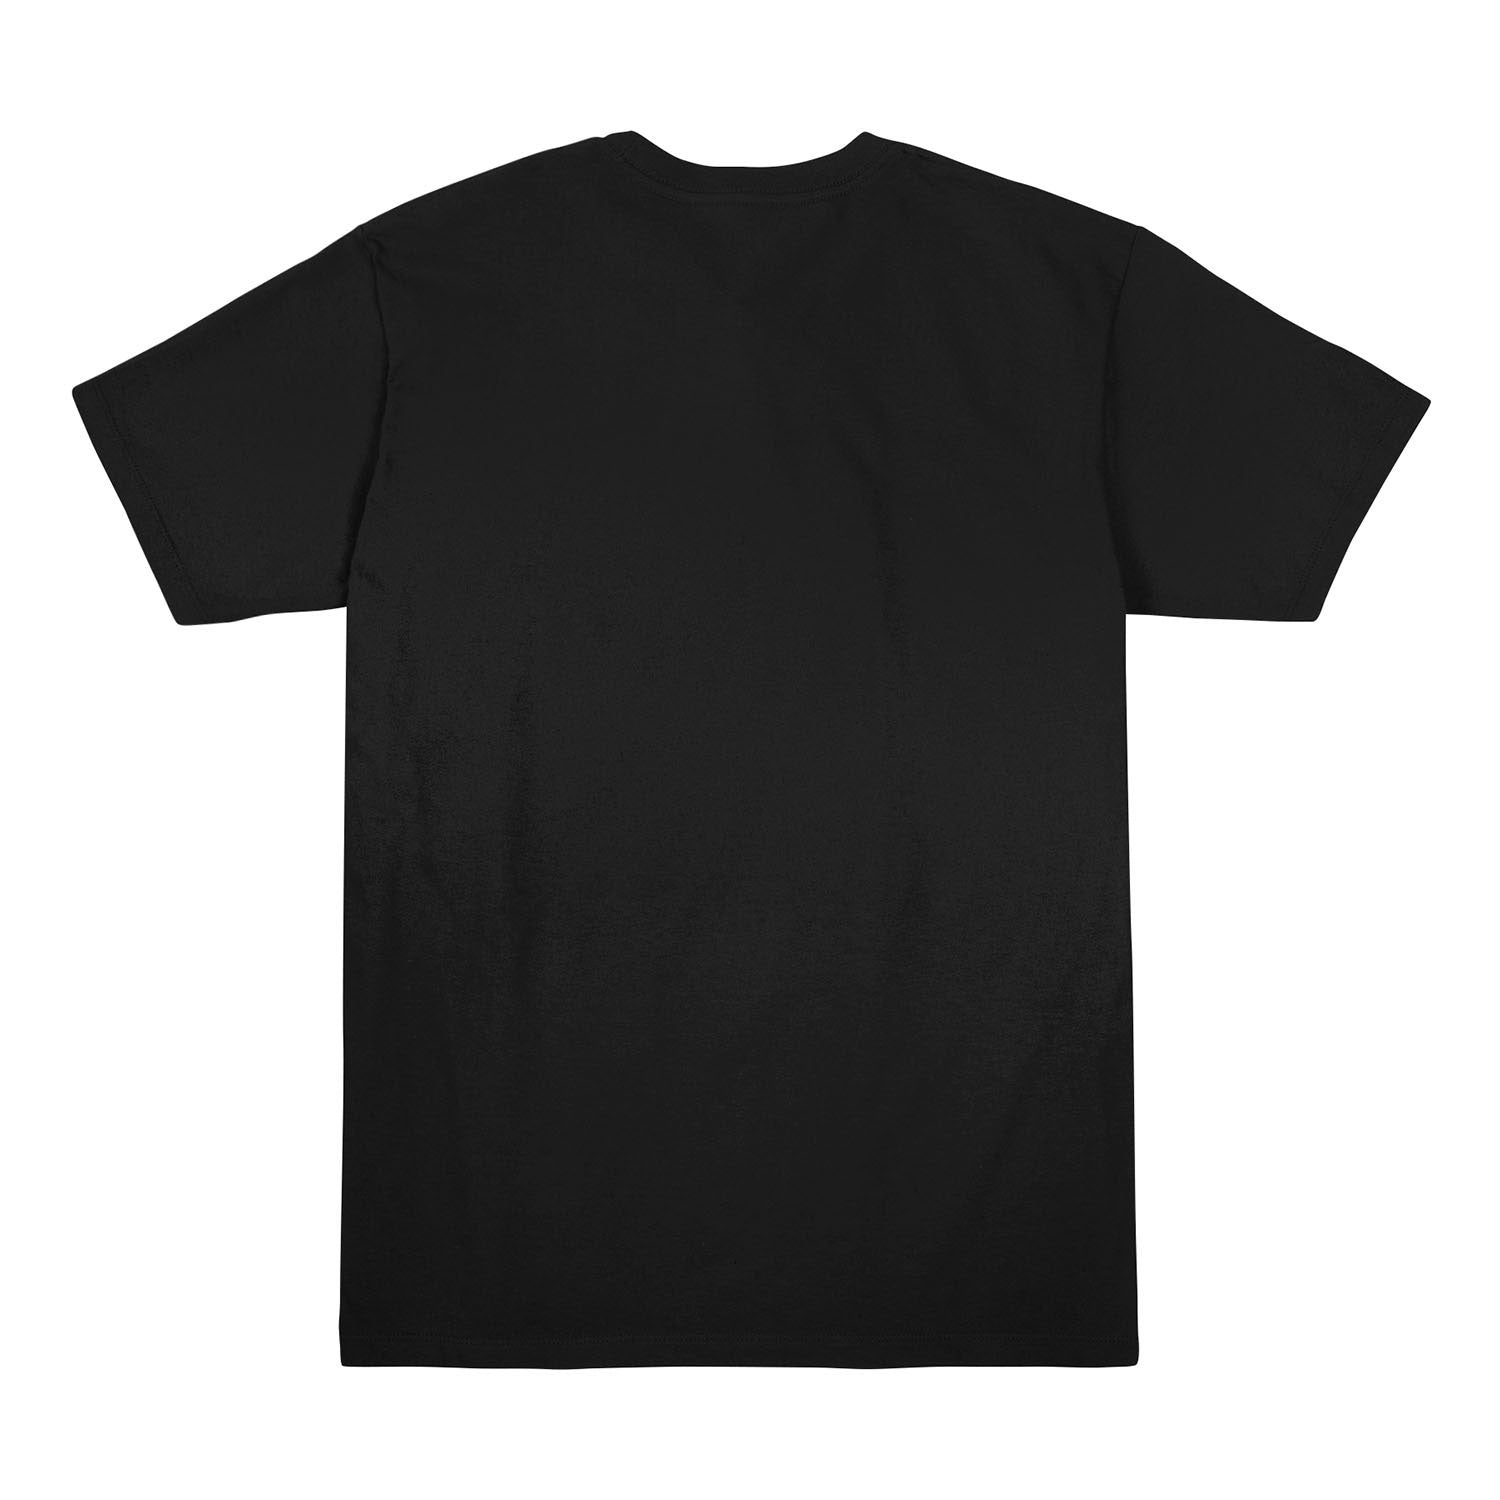 Call of Duty: Vanguard Logo Black T-Shirt - Back View